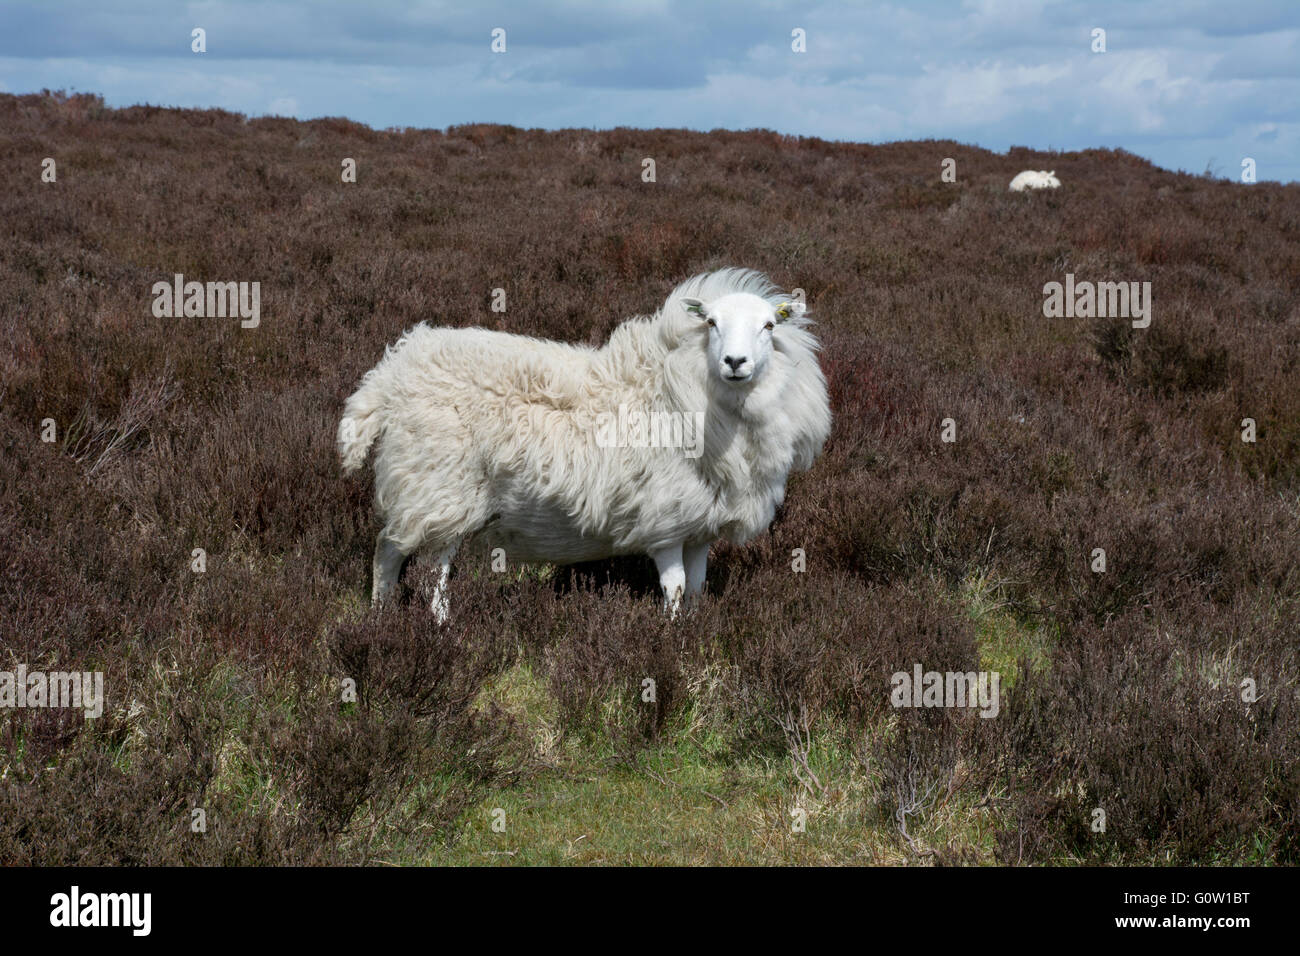 Weibliche Schafe, der Wind ist Vlies so sieht es aus, wie eine Löwenmähne. Stockfoto